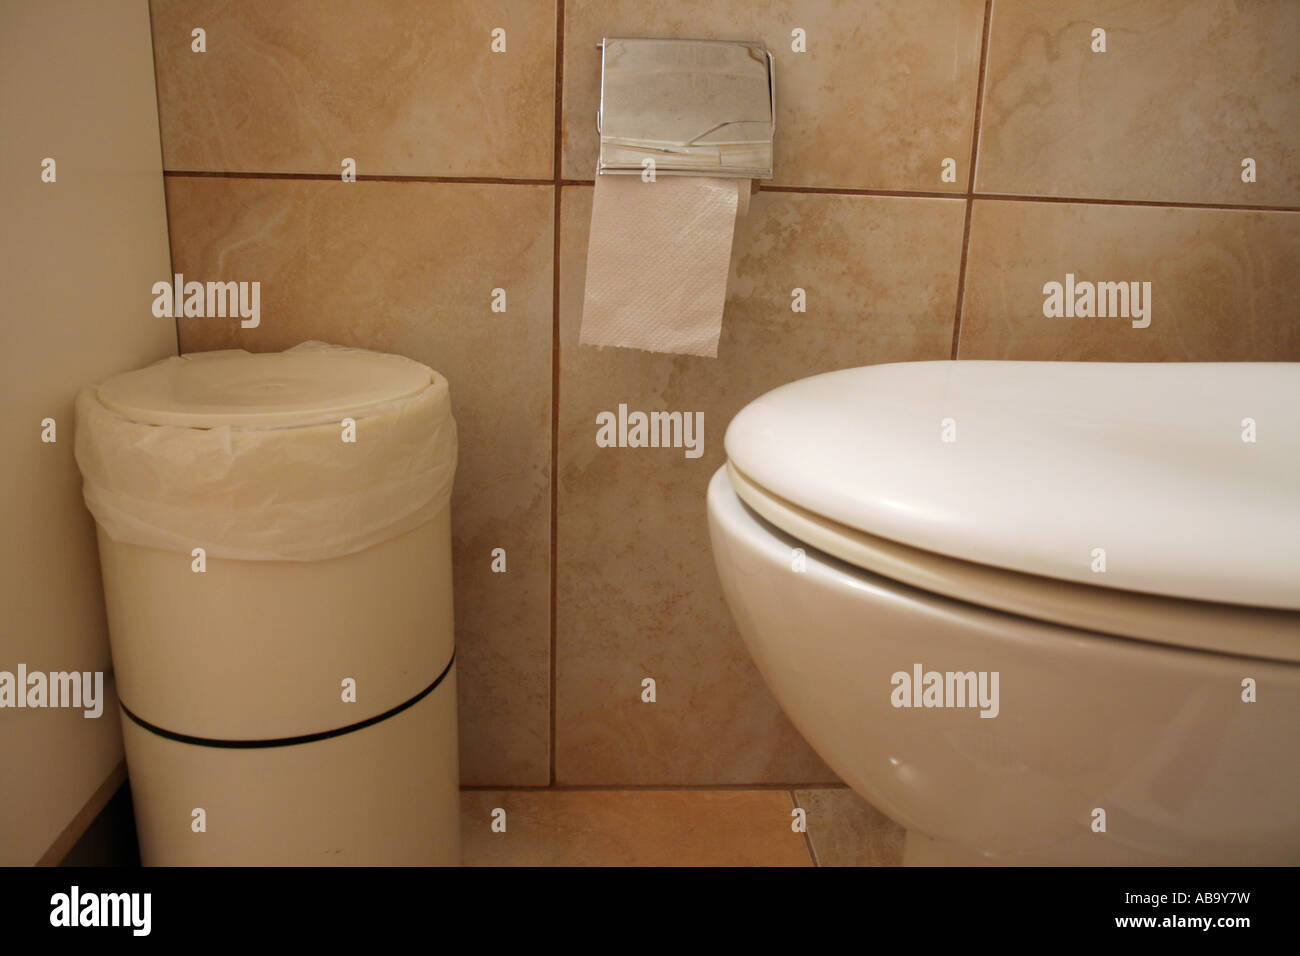 WC-Papier bin in vielen griechischen Inseln eingesetzt, weil Sie nicht  Papier in die Toilette spülen muss Stockfotografie - Alamy